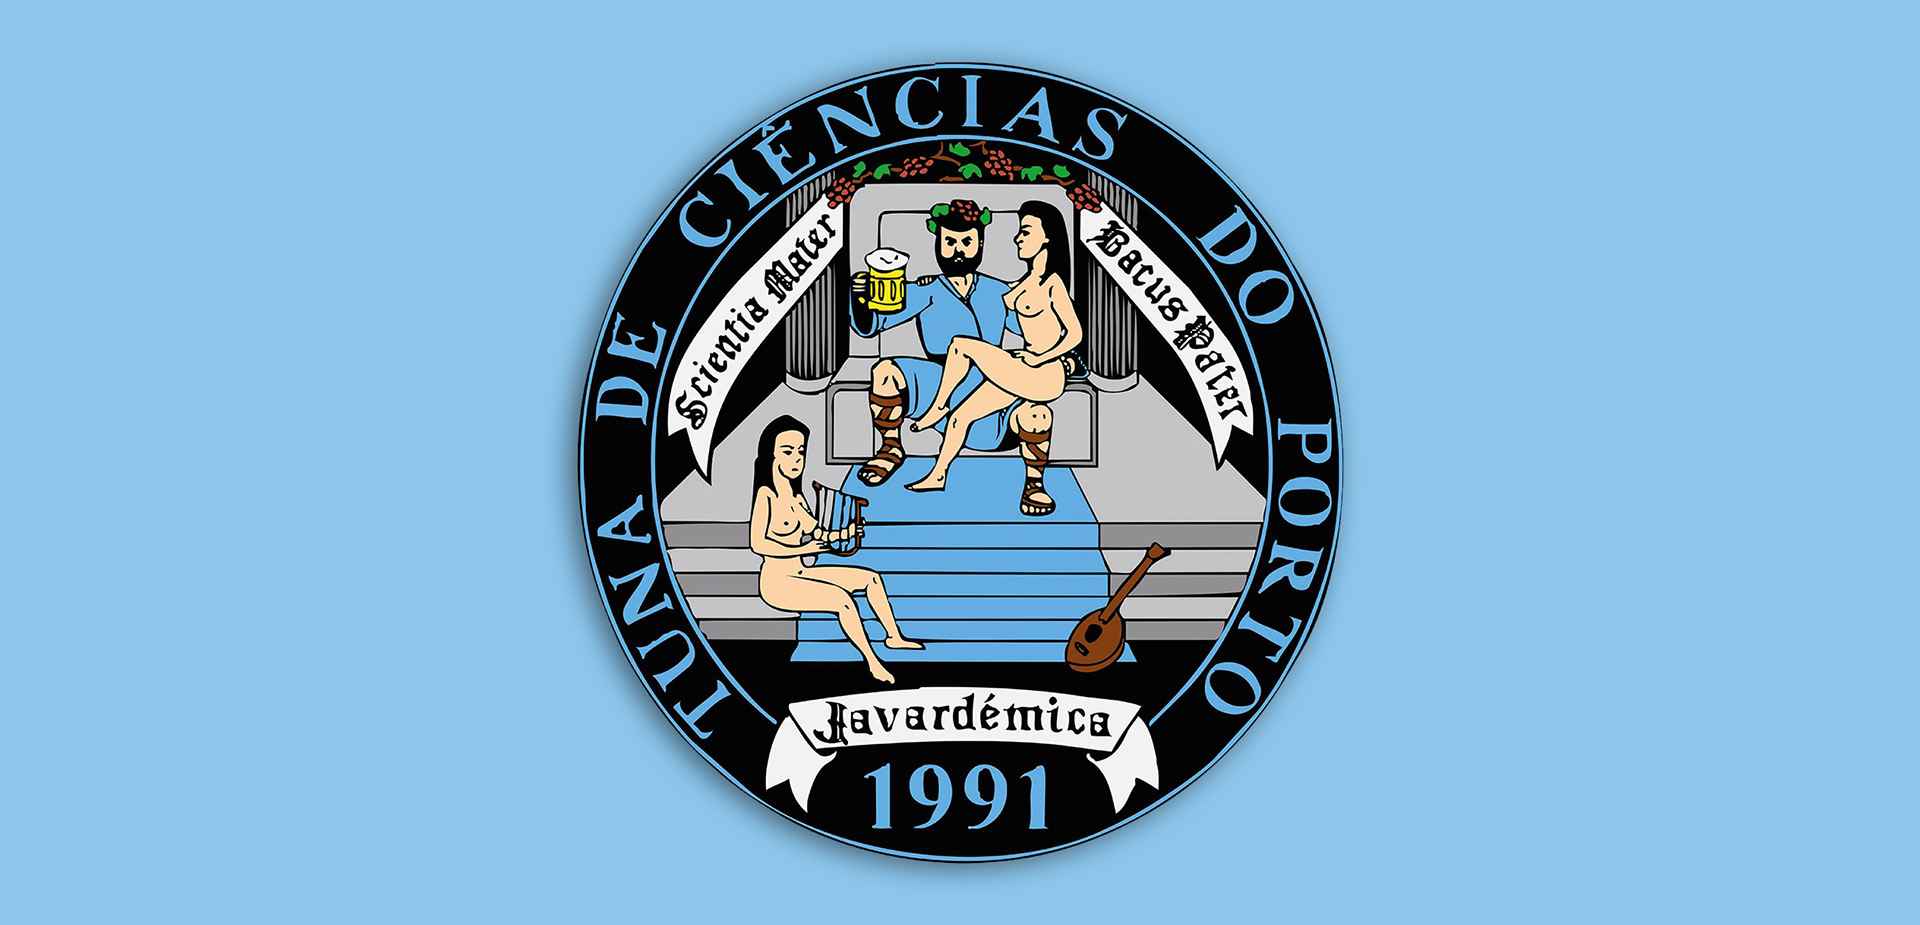 Logo of Javardémica - Tuna Académica Masculina da Faculdade de Ciências da Universidade do Porto